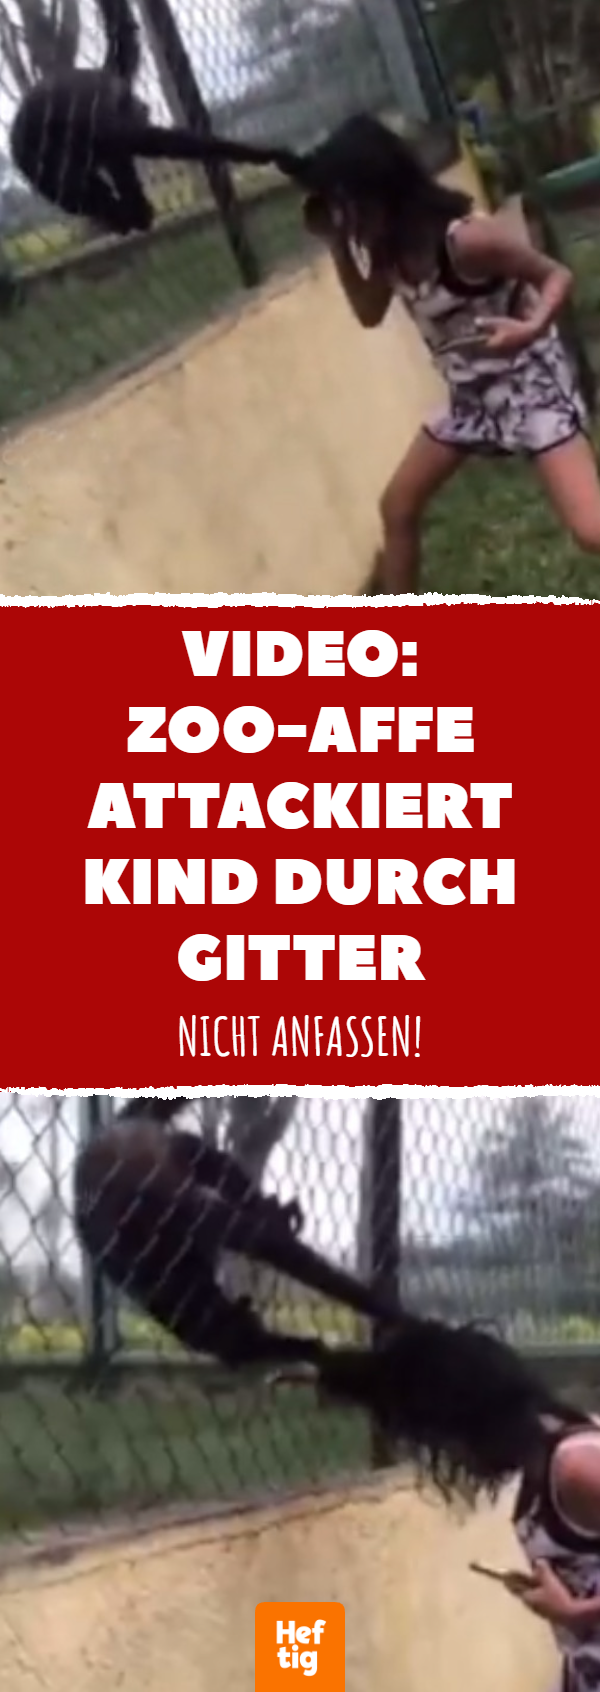 Video: Zoo-Affe attackiert Kind durch Gitter